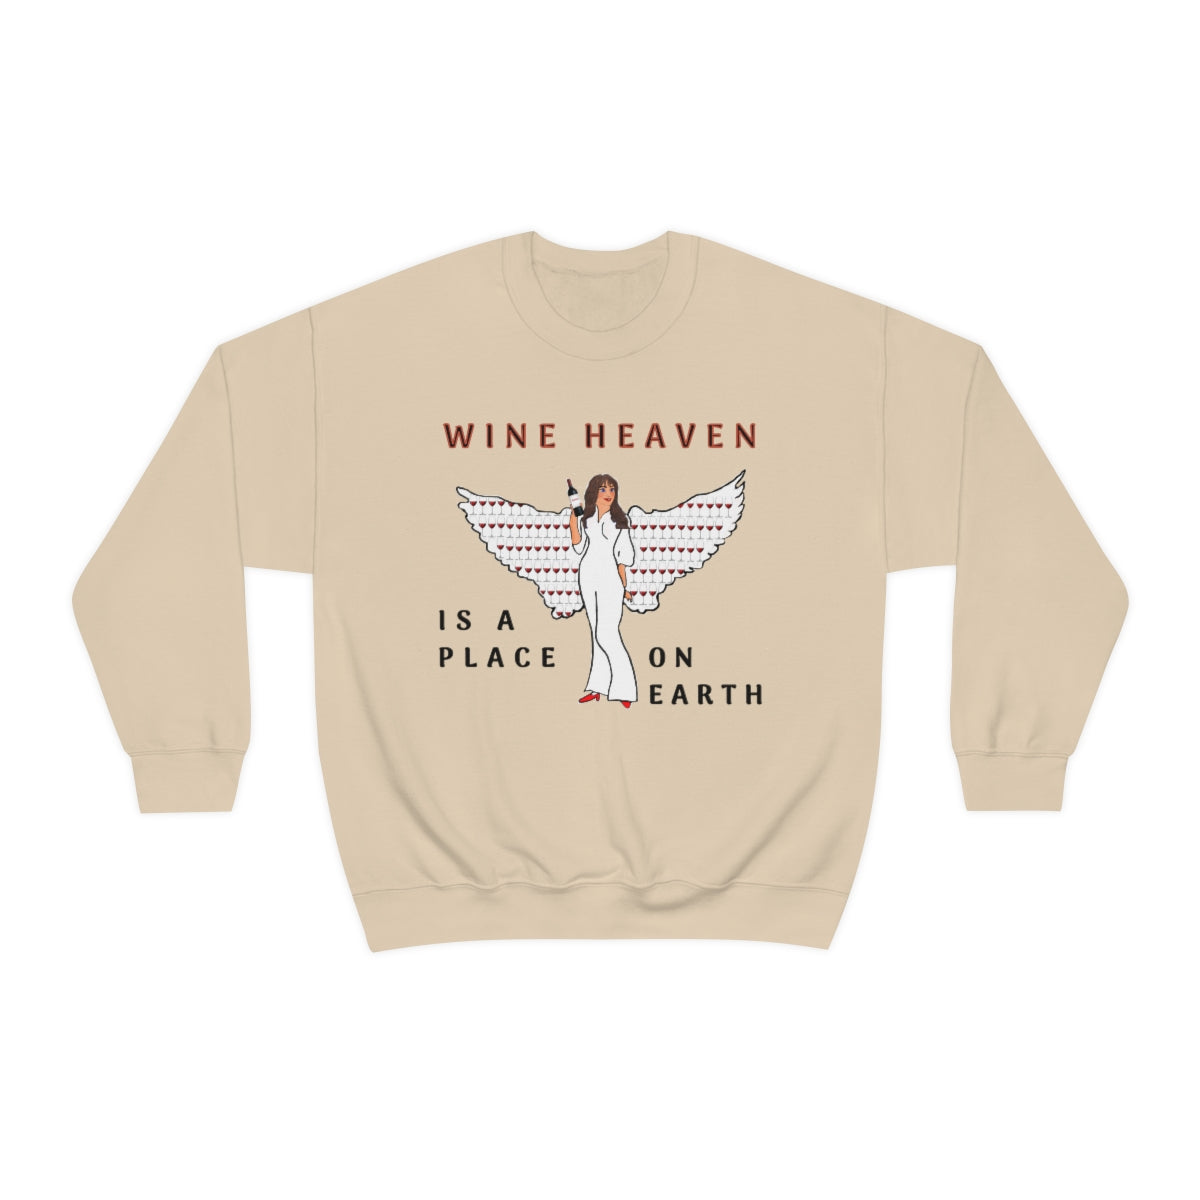 WINE HEAVEN Sweater